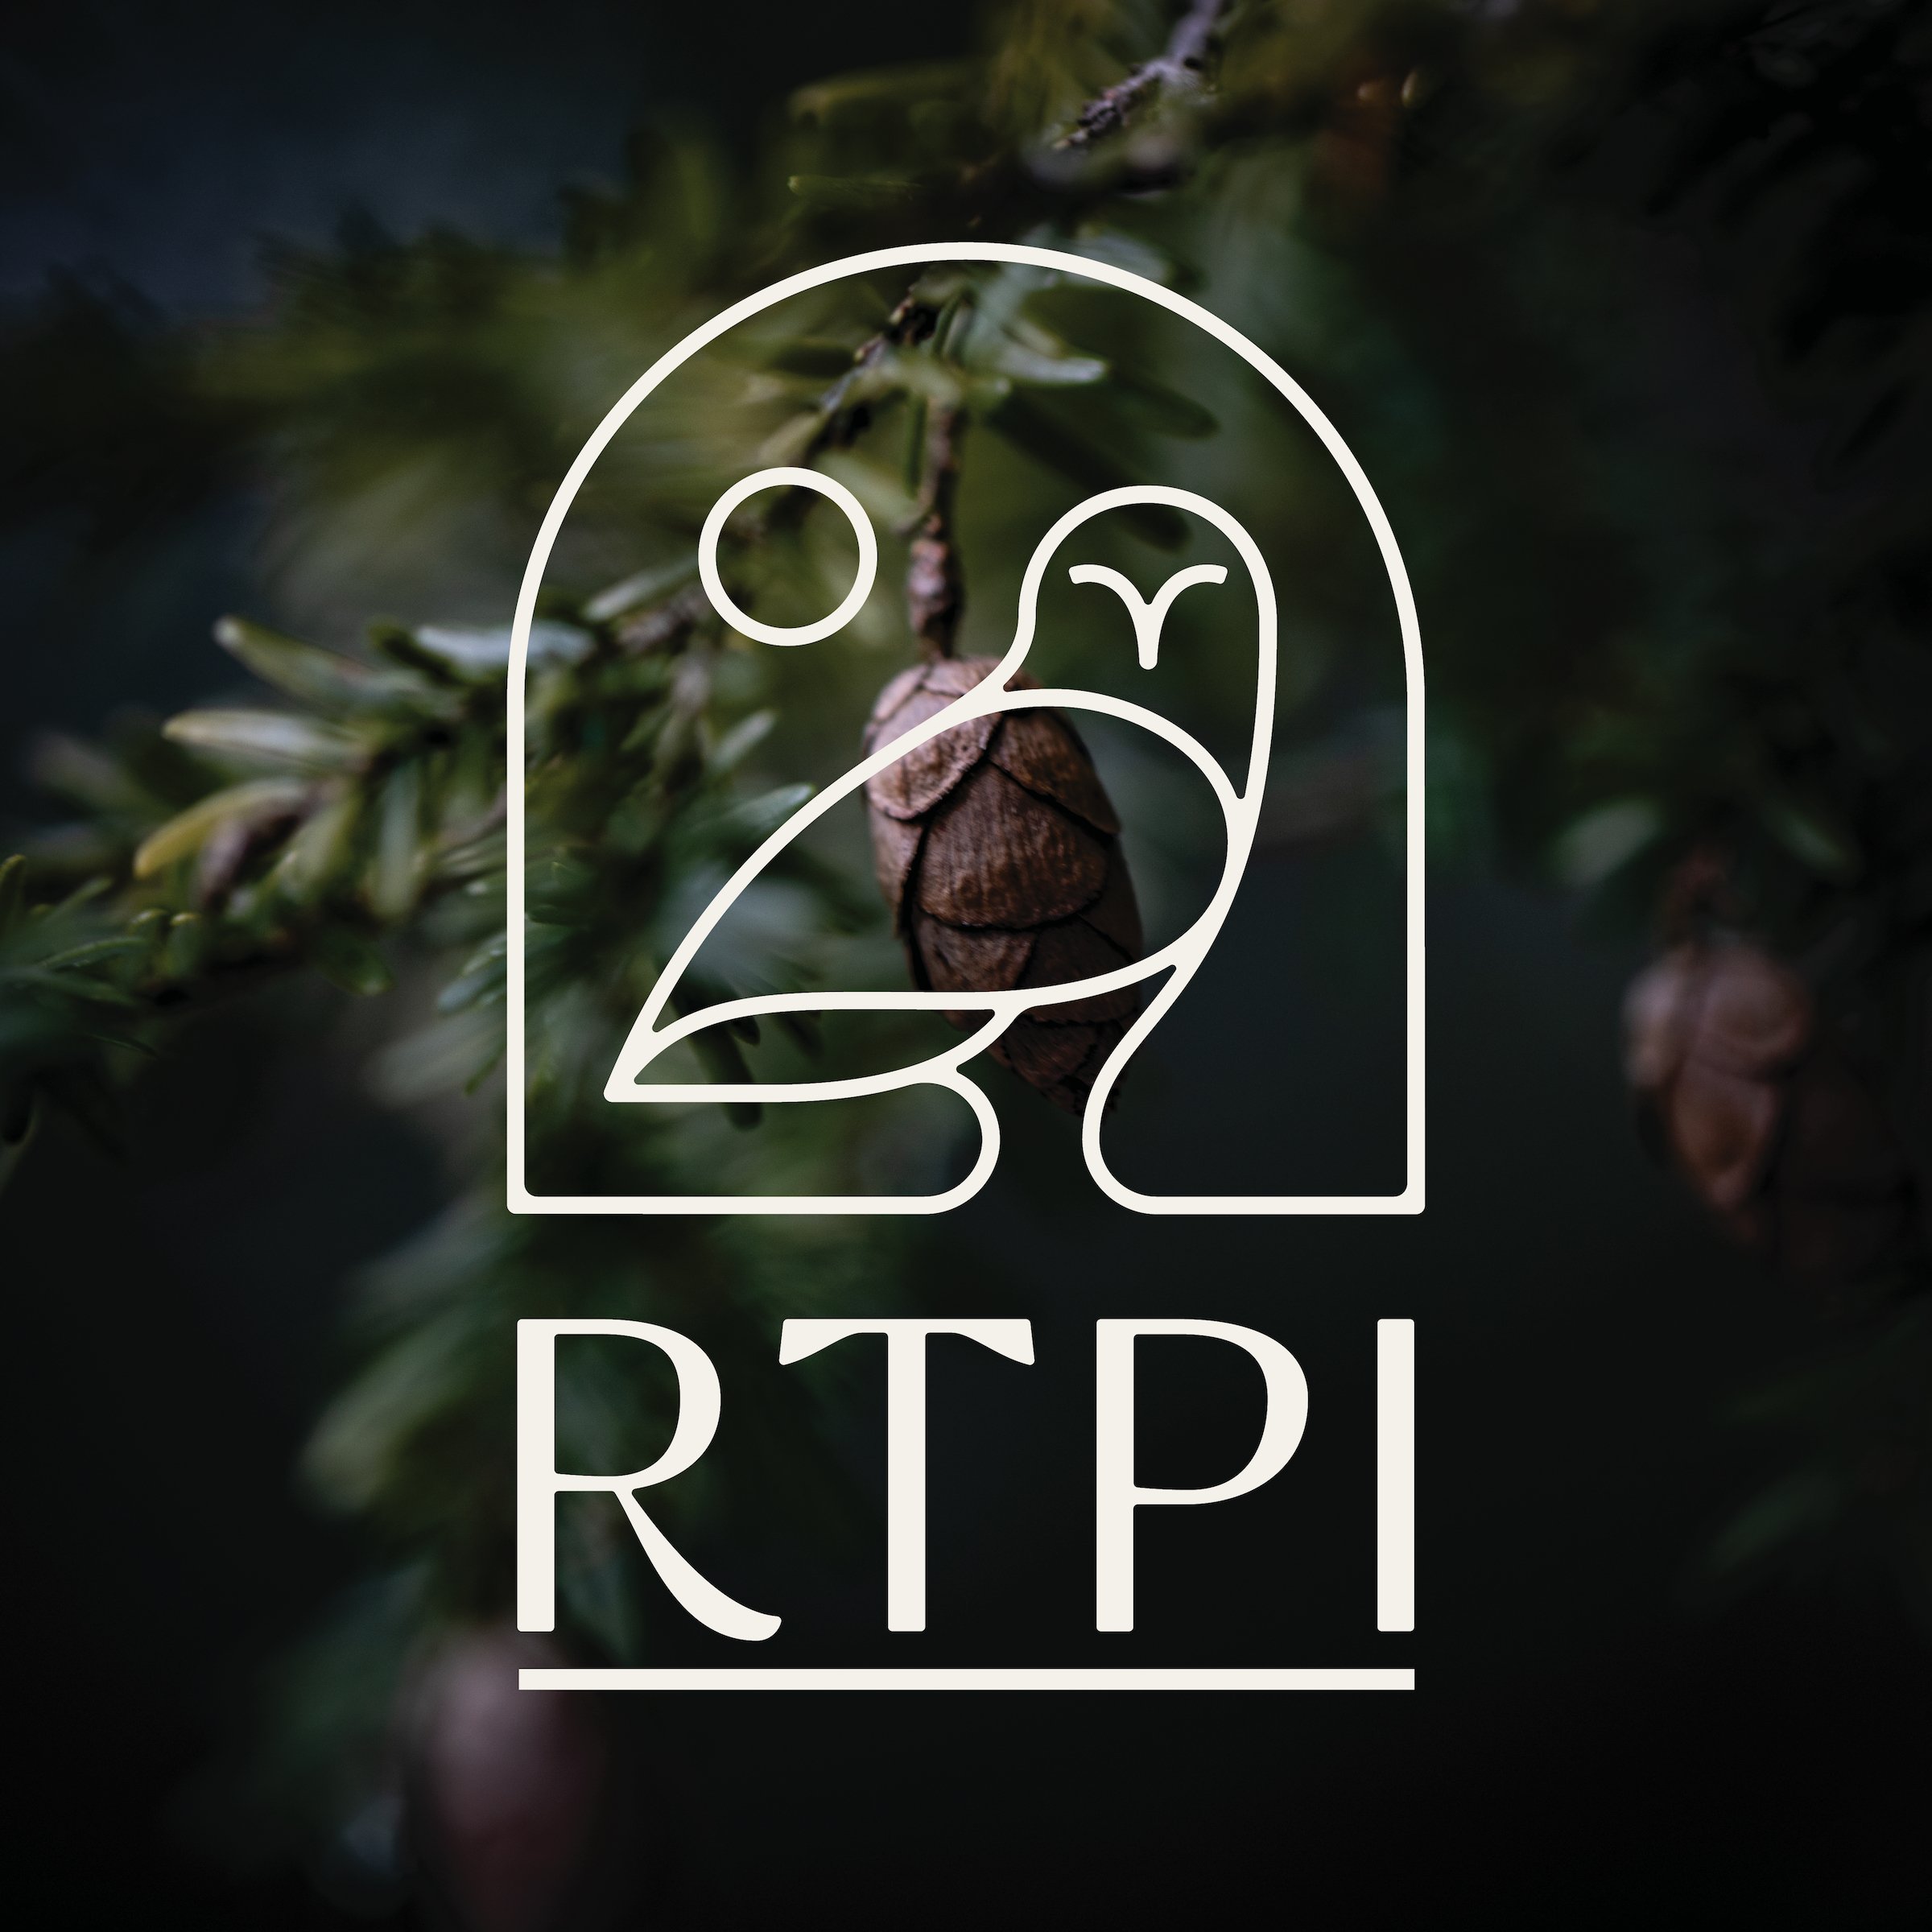 RTPI Image.jpg